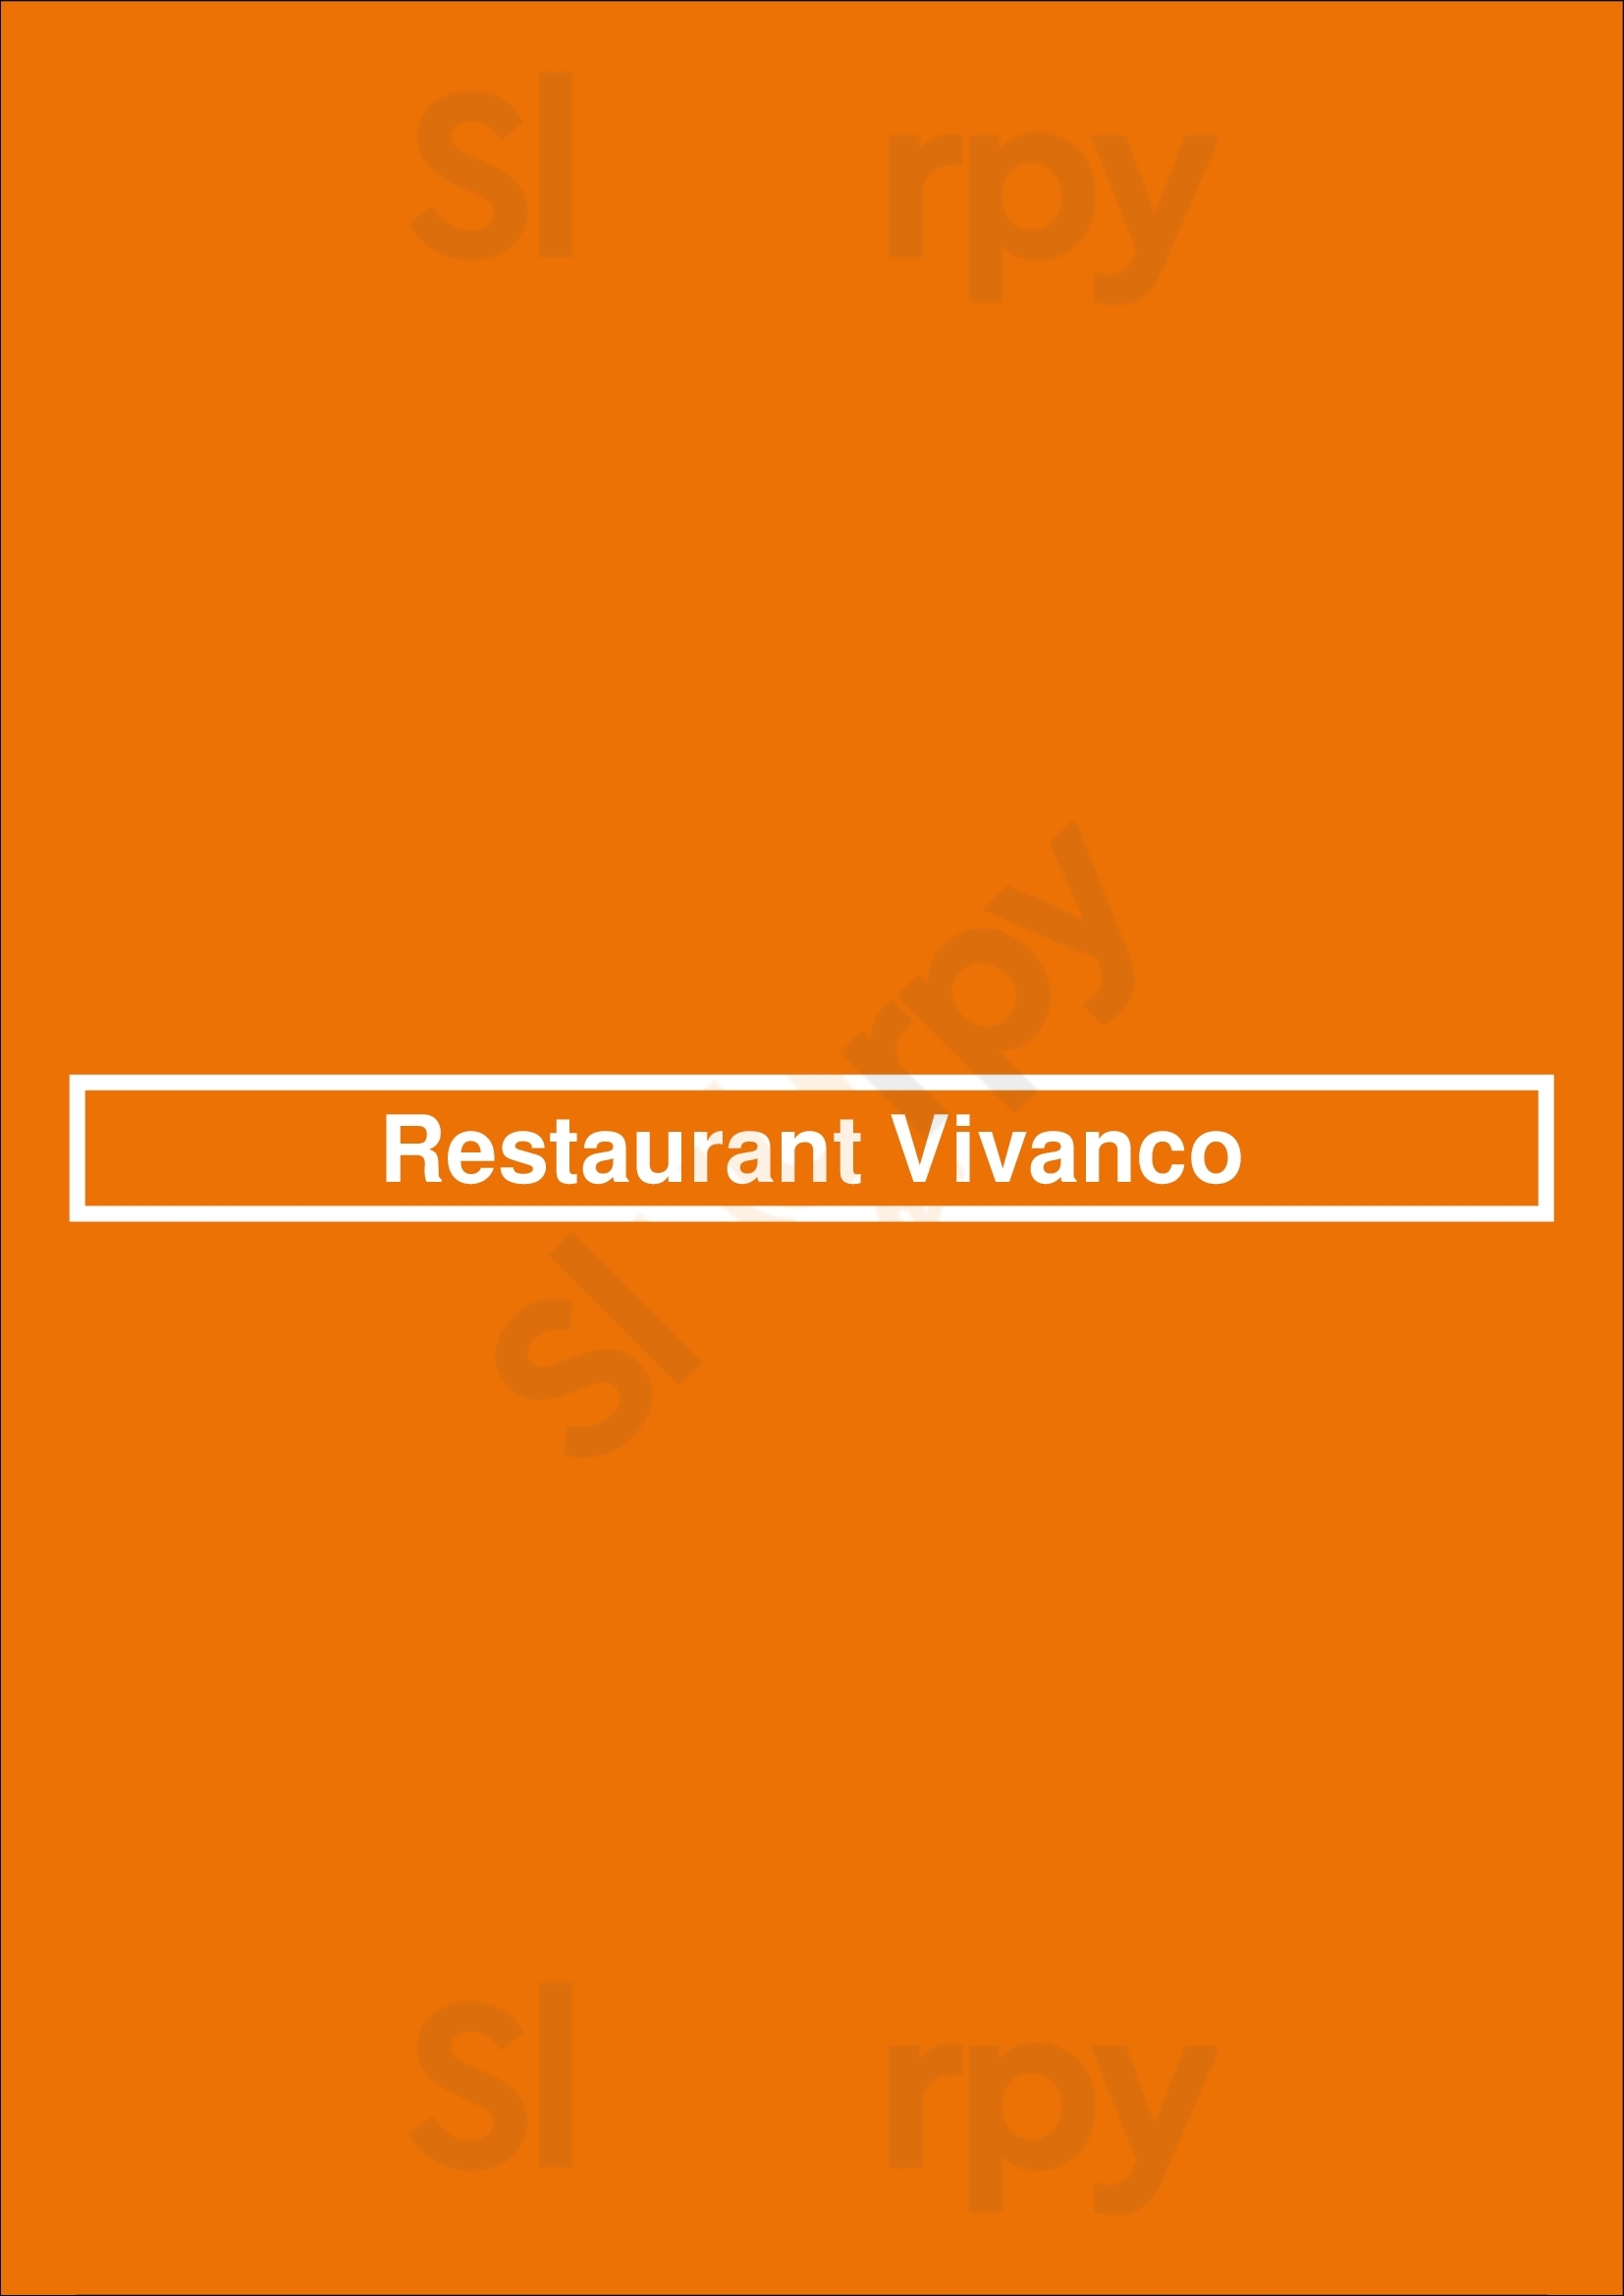 Restaurant Vivanco Tigre Menu - 1